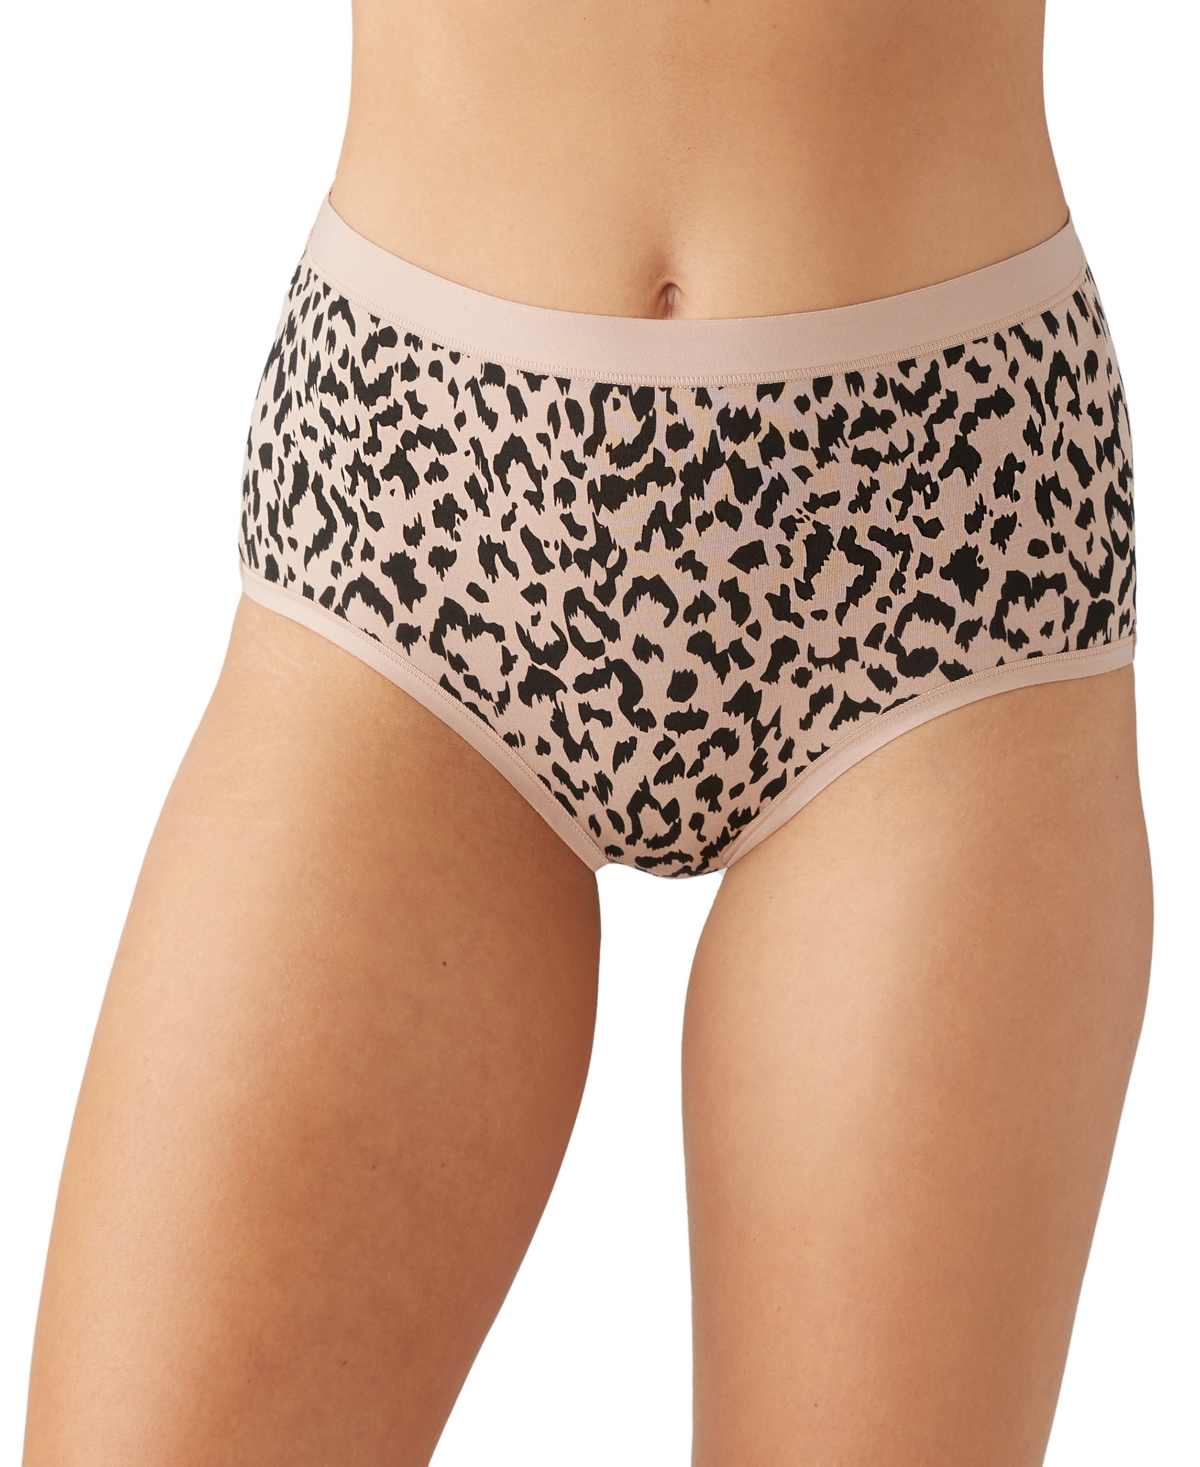 Wacoal Women's Understated Cotton Brief Underwear 875362 In Cheetah